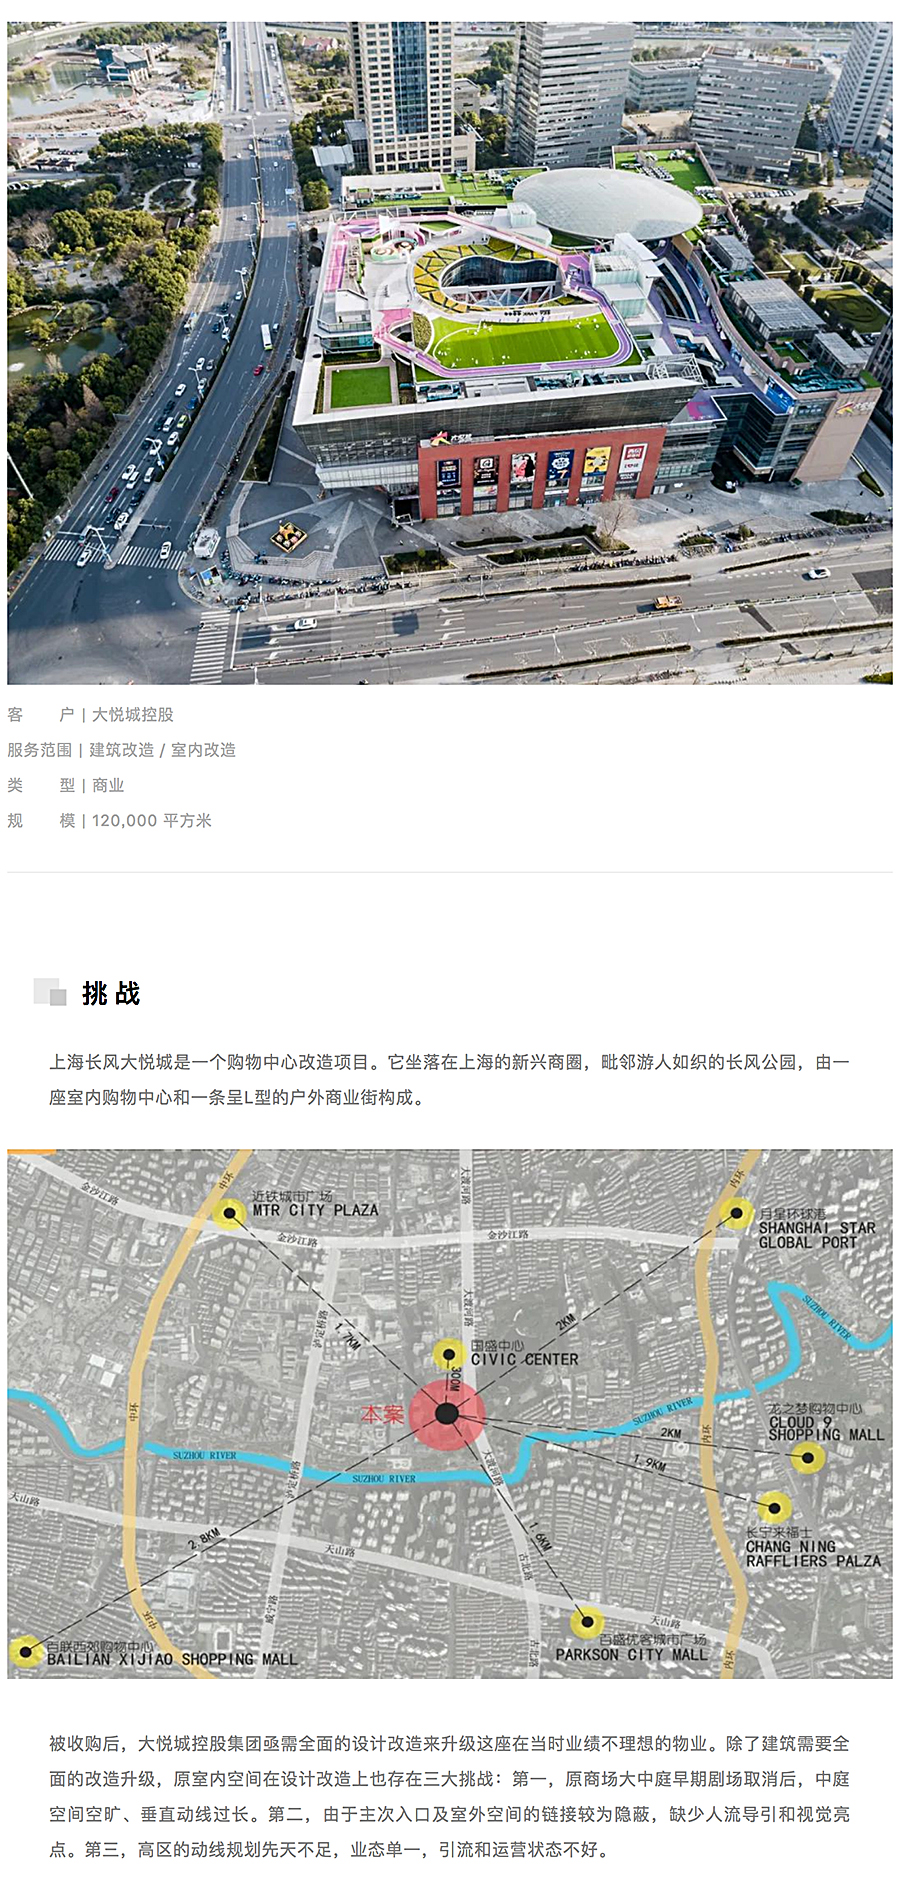 上海长风大悦城-_-AICO-2020-REARD金奖项目赏析_0001_图层-2.jpg